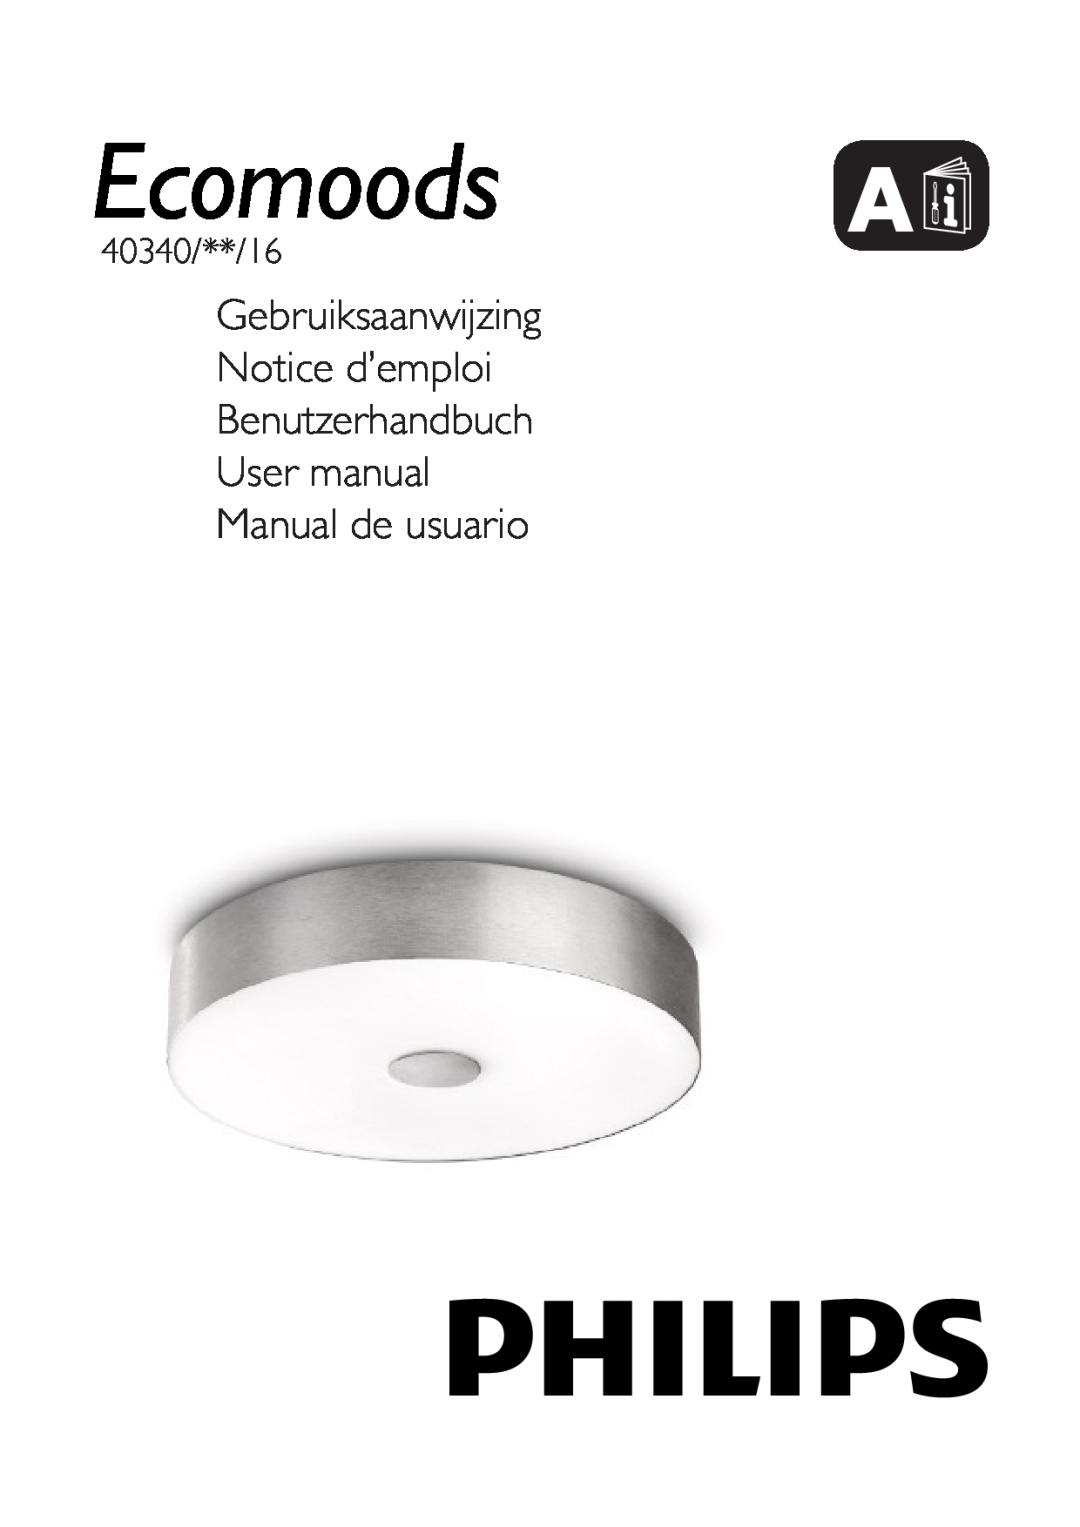 Philips 40340/48/16 user manual Gebruiksaanwijzing Notice d’emploi, Benutzerhandbuch User manual Manual de usuario 